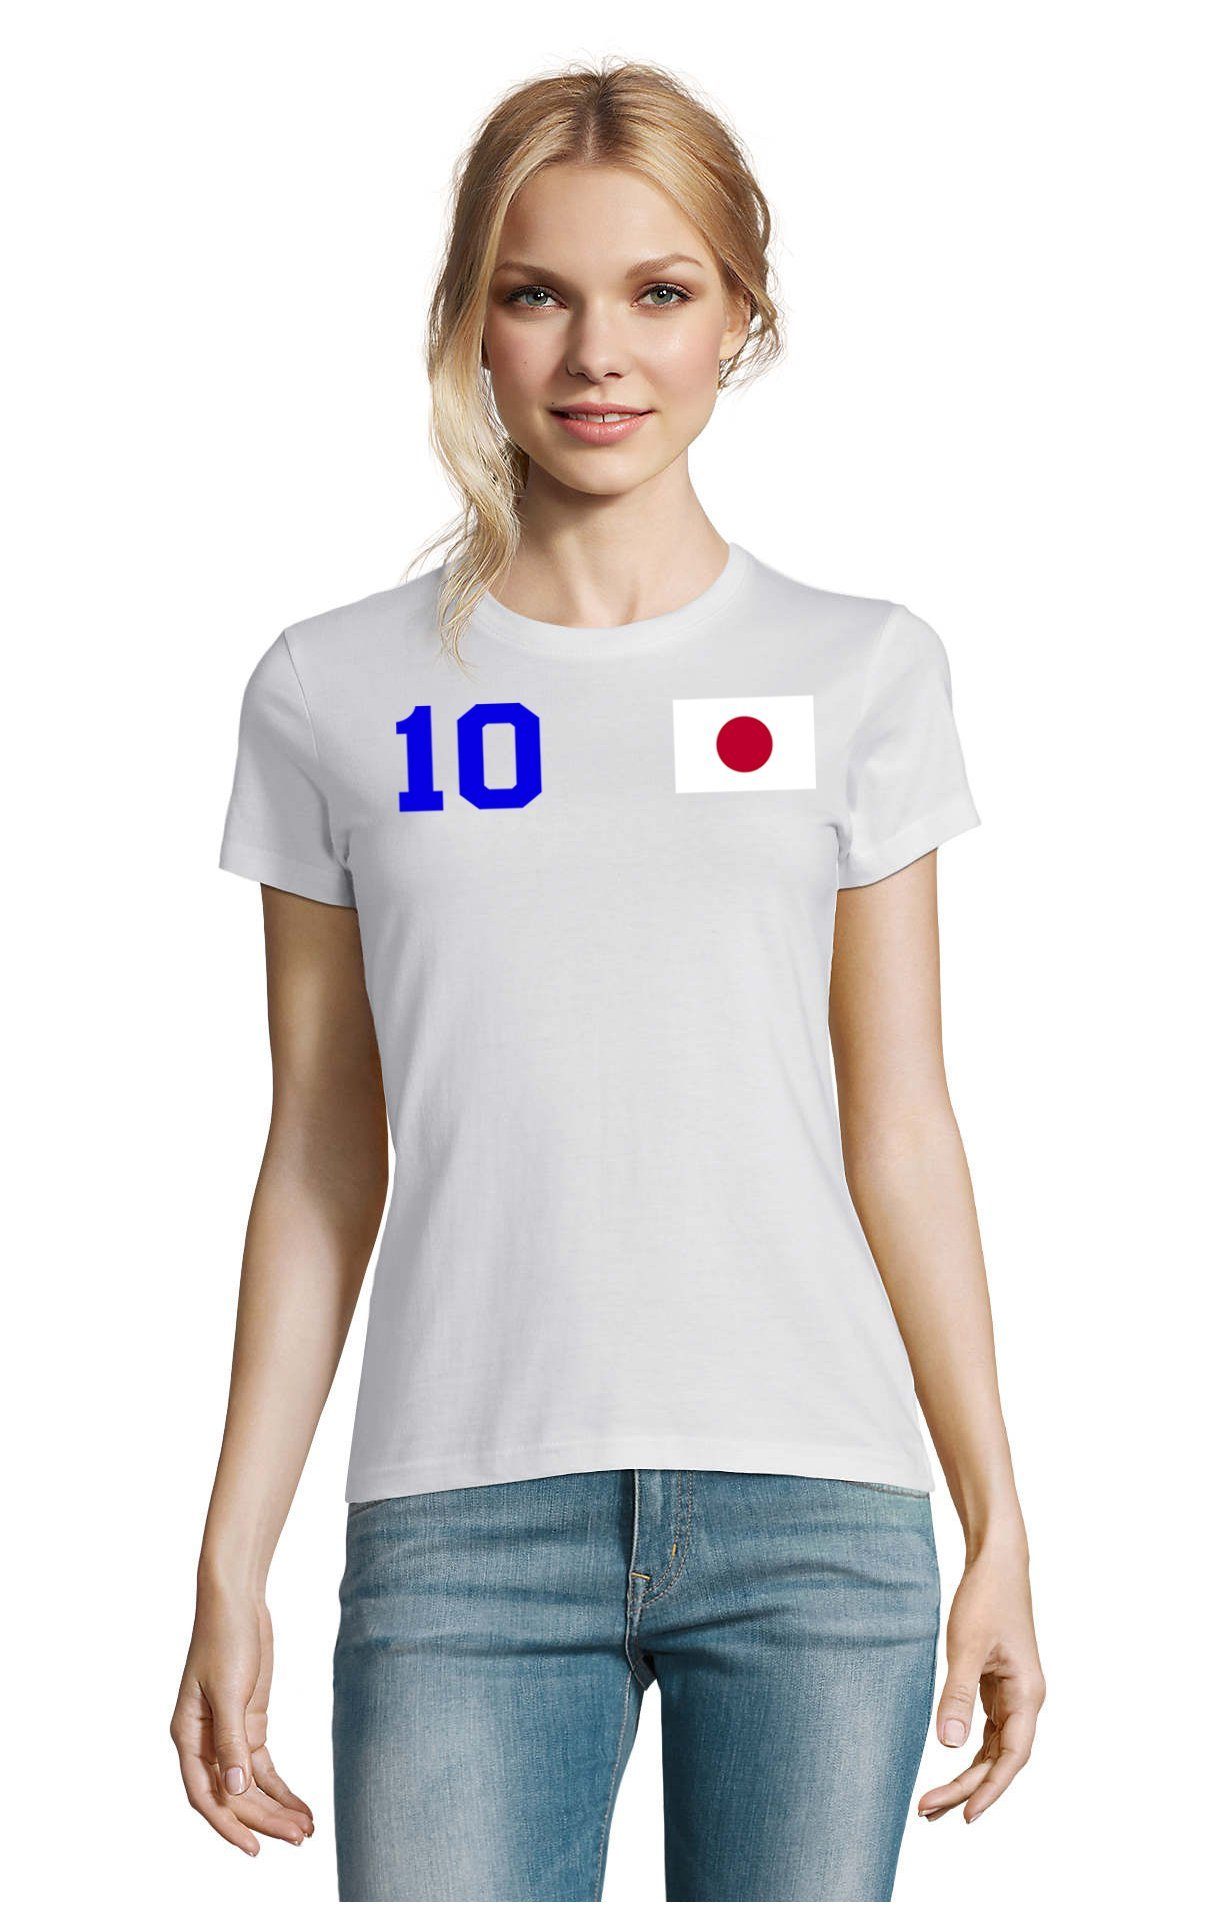 Blondie & Brownie T-Shirt Damen Japan Asien Sport Trikot Fußball Weltmeister Meister WM